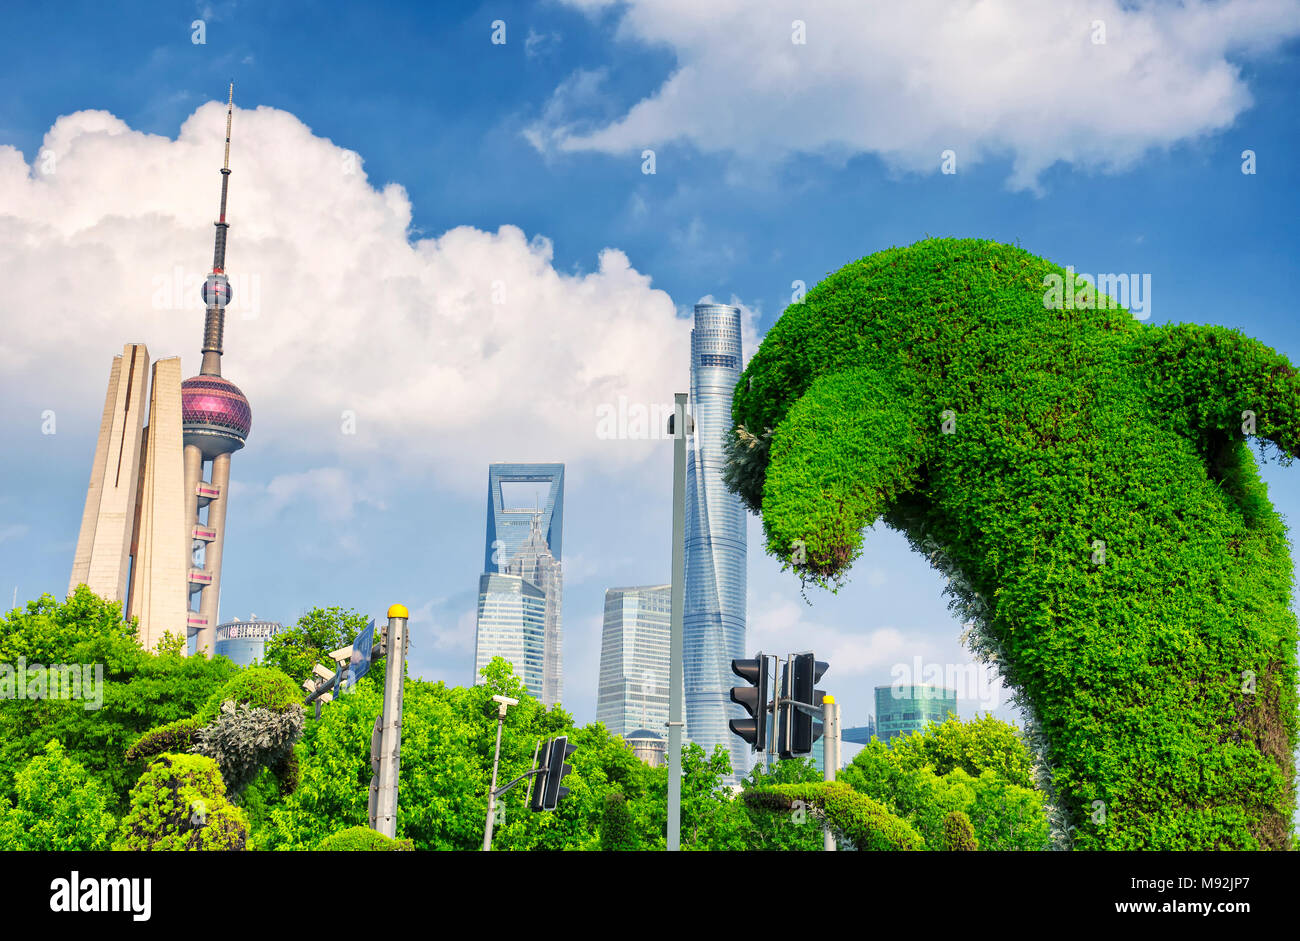 Un grand en forme de dauphin près du bush (jardin) waibaidu bridge sur le côté de la Chine Shanghai Puxi. Banque D'Images